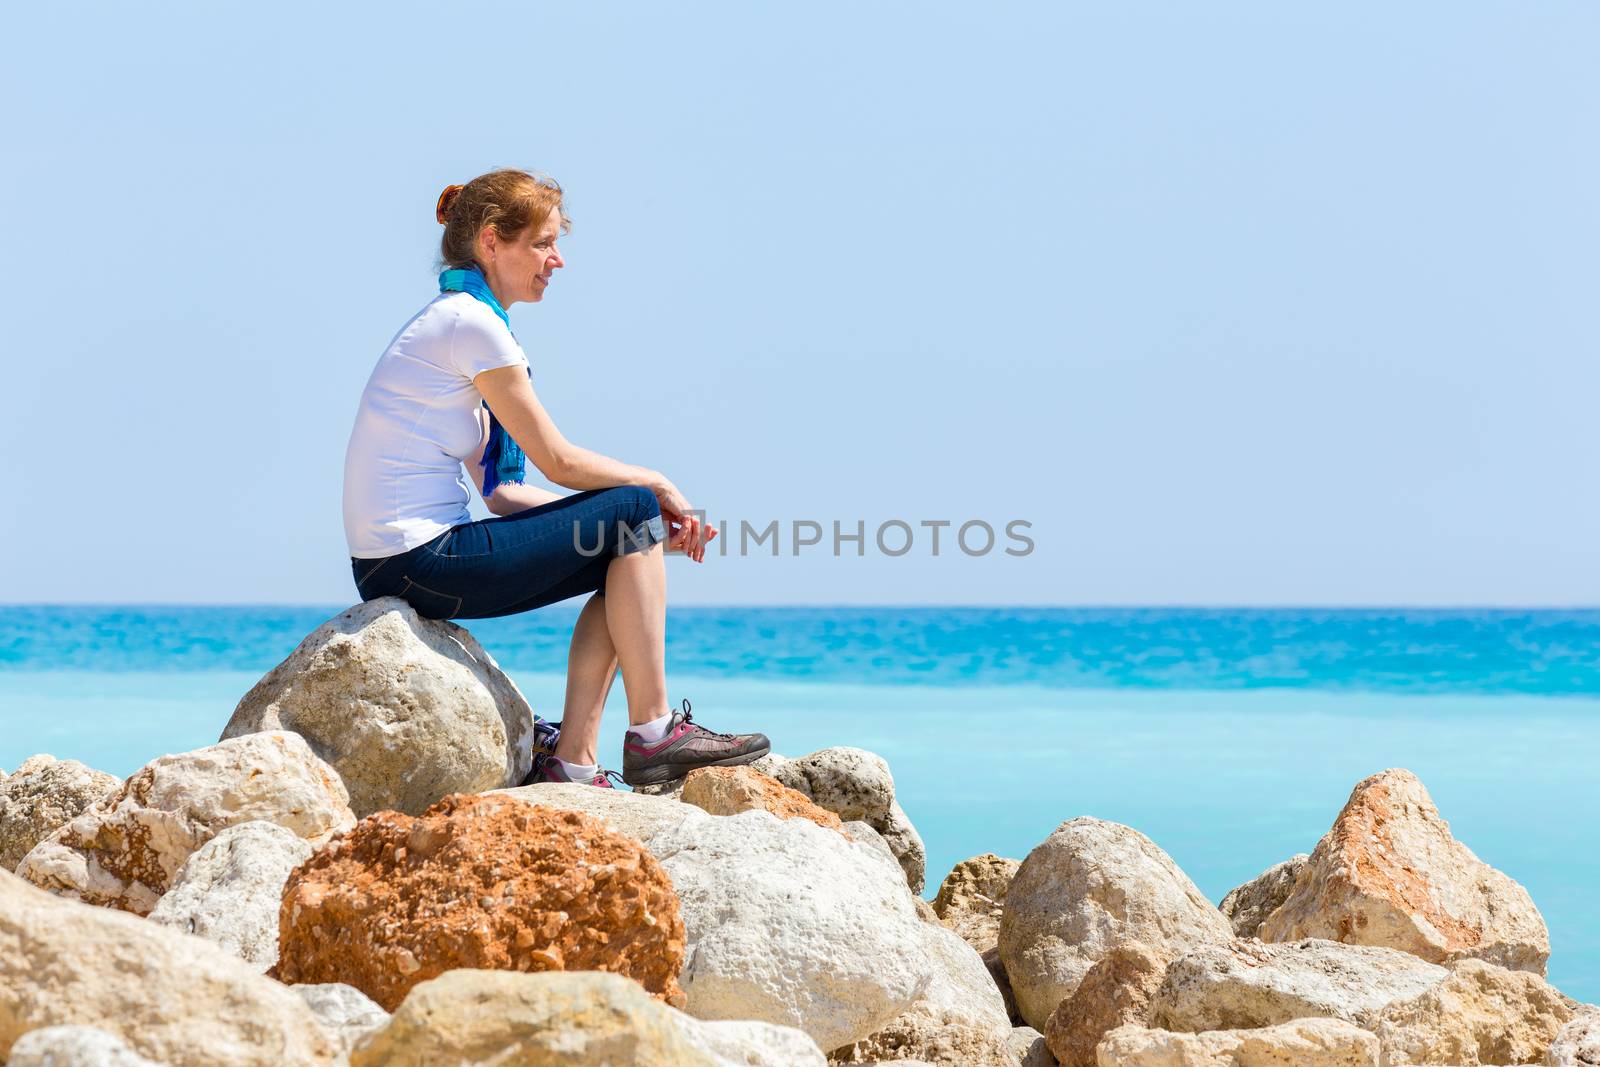 European middle aged woman sitting as tourist on rocks with blue sea horizon enjoying view